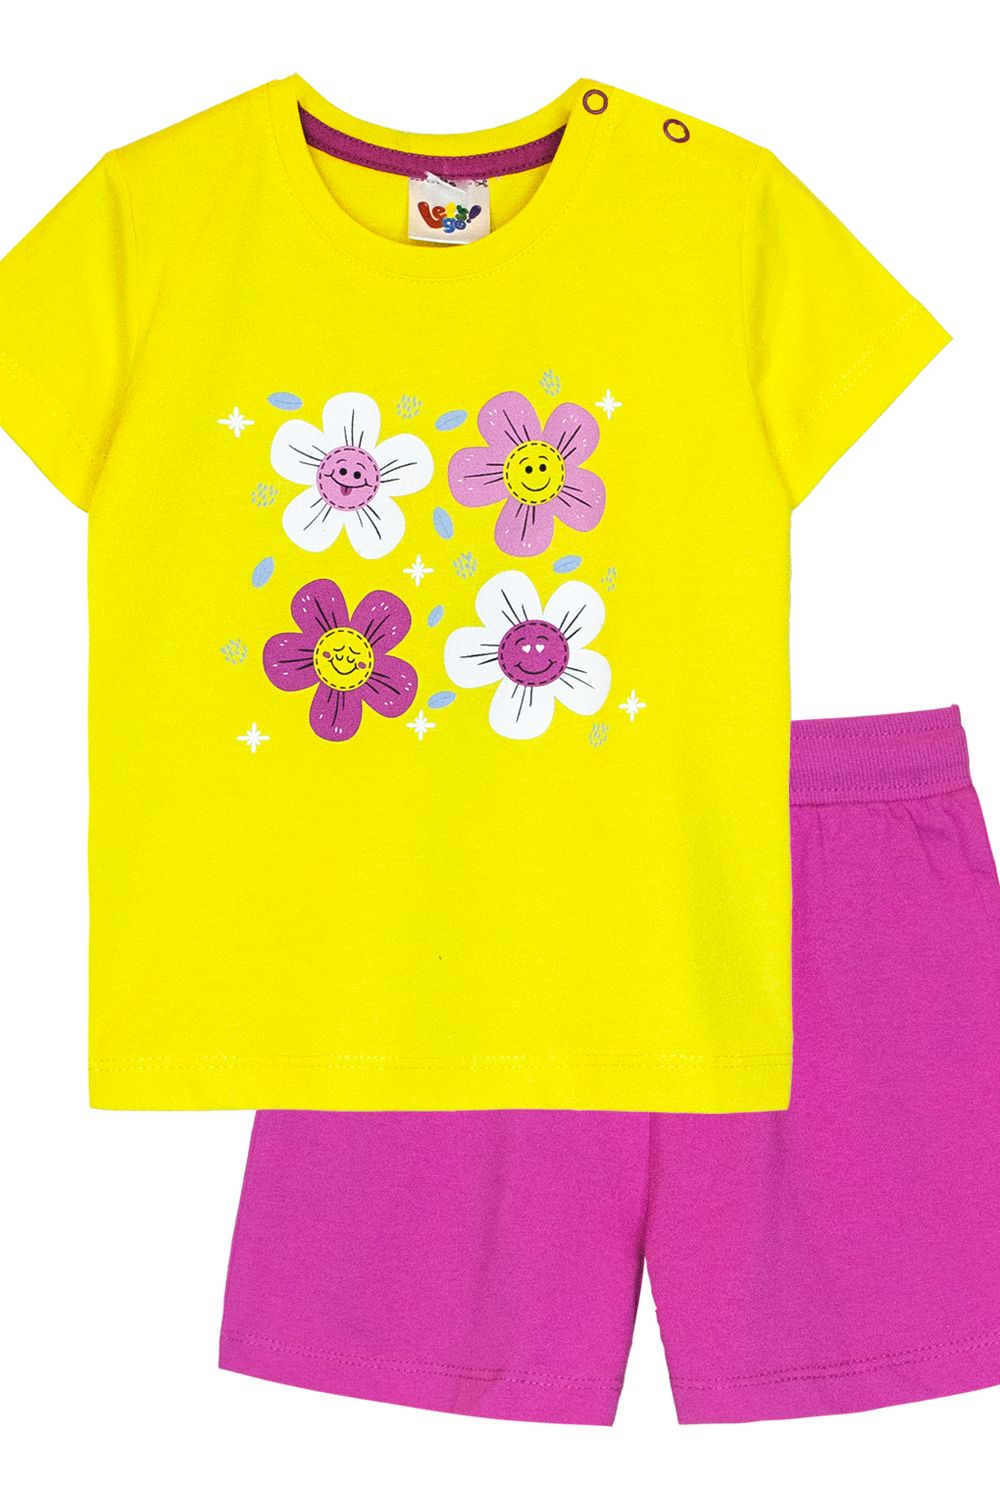 Комплект для девочки (футболка+шорты) 41131 (м) - желтый/фуксия